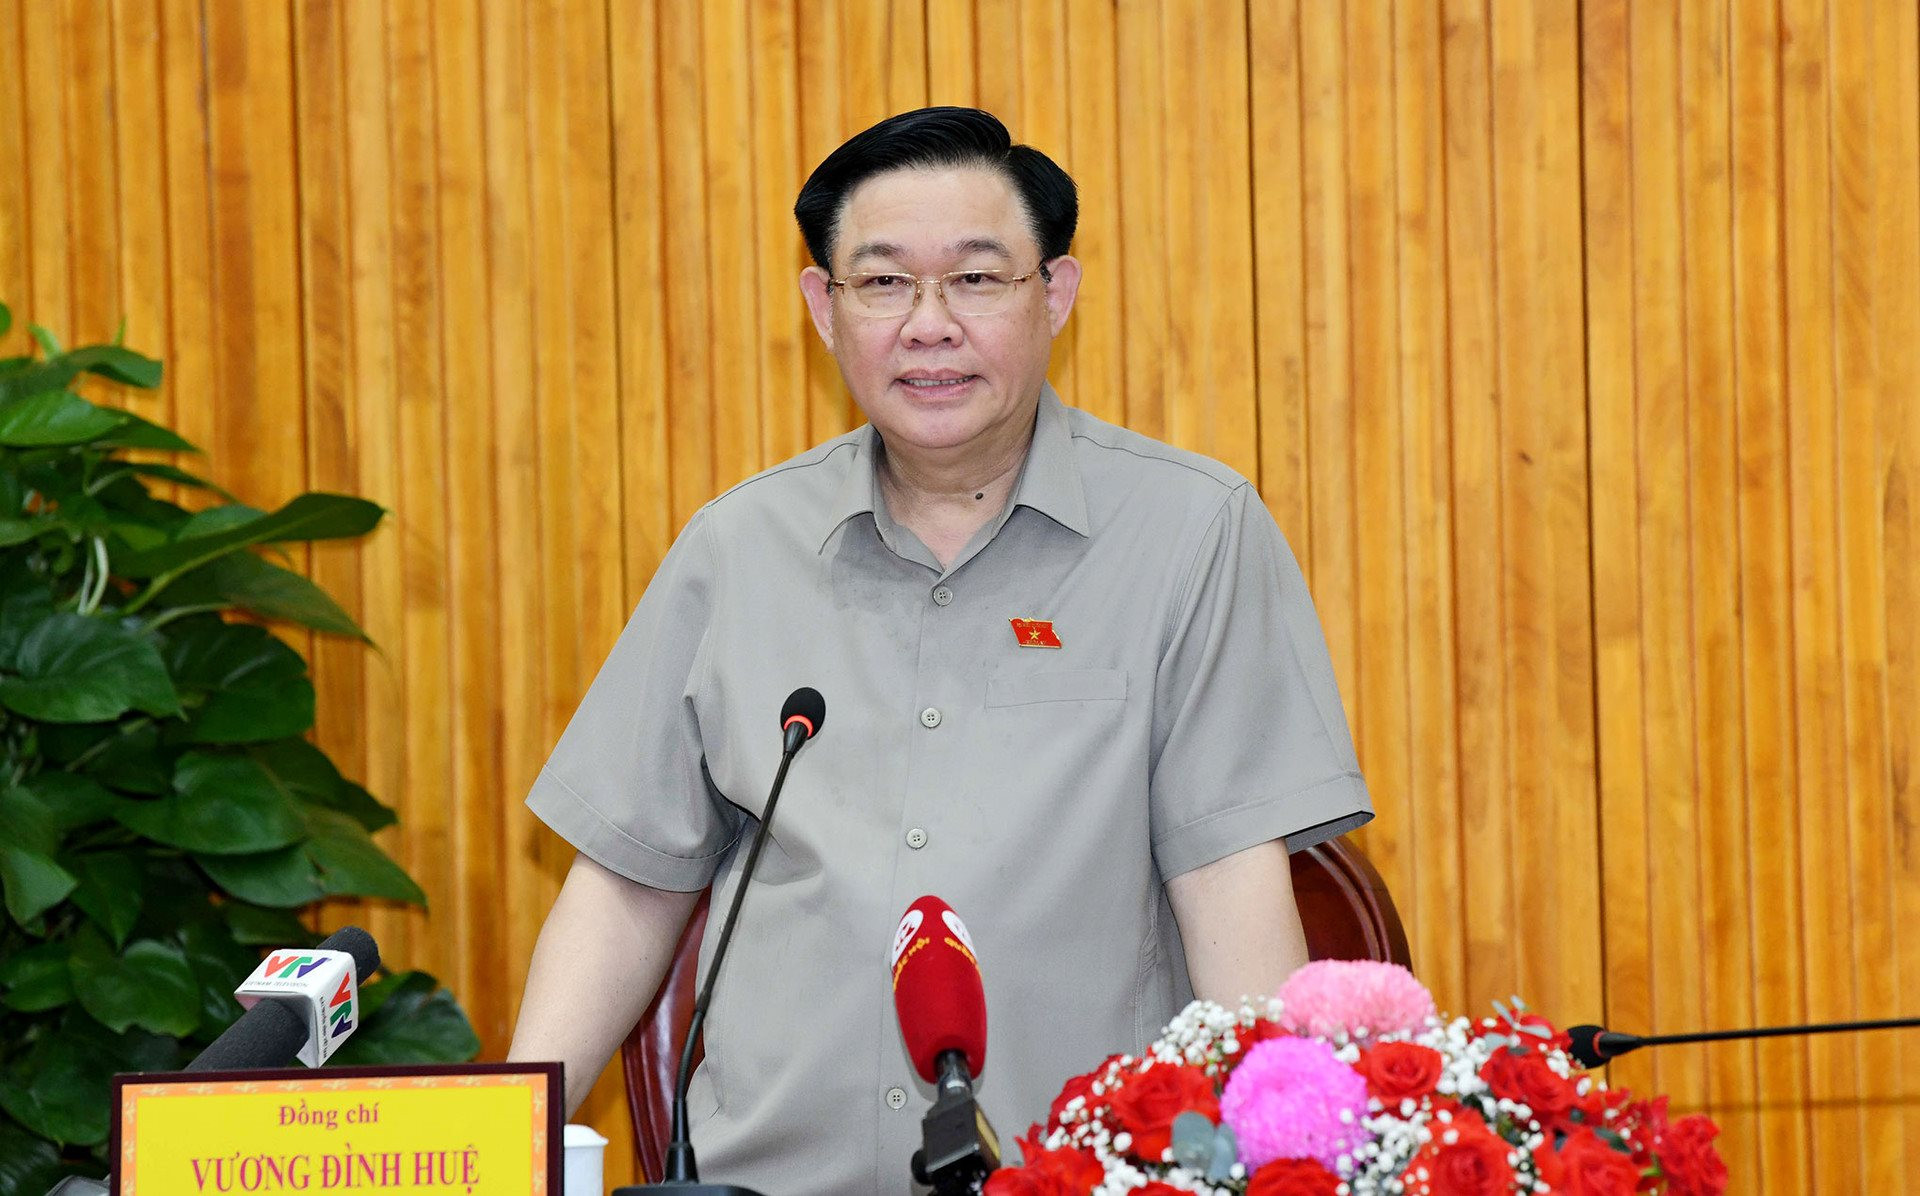 Chủ tịch Quốc hội Vương Đình Huệ: Có chương trình, kế hoạch, đề án cụ thể triển khai Quy hoạch tỉnh Tây Ninh thời kỳ 2021-2030, tầm nhìn đến 2050 -0